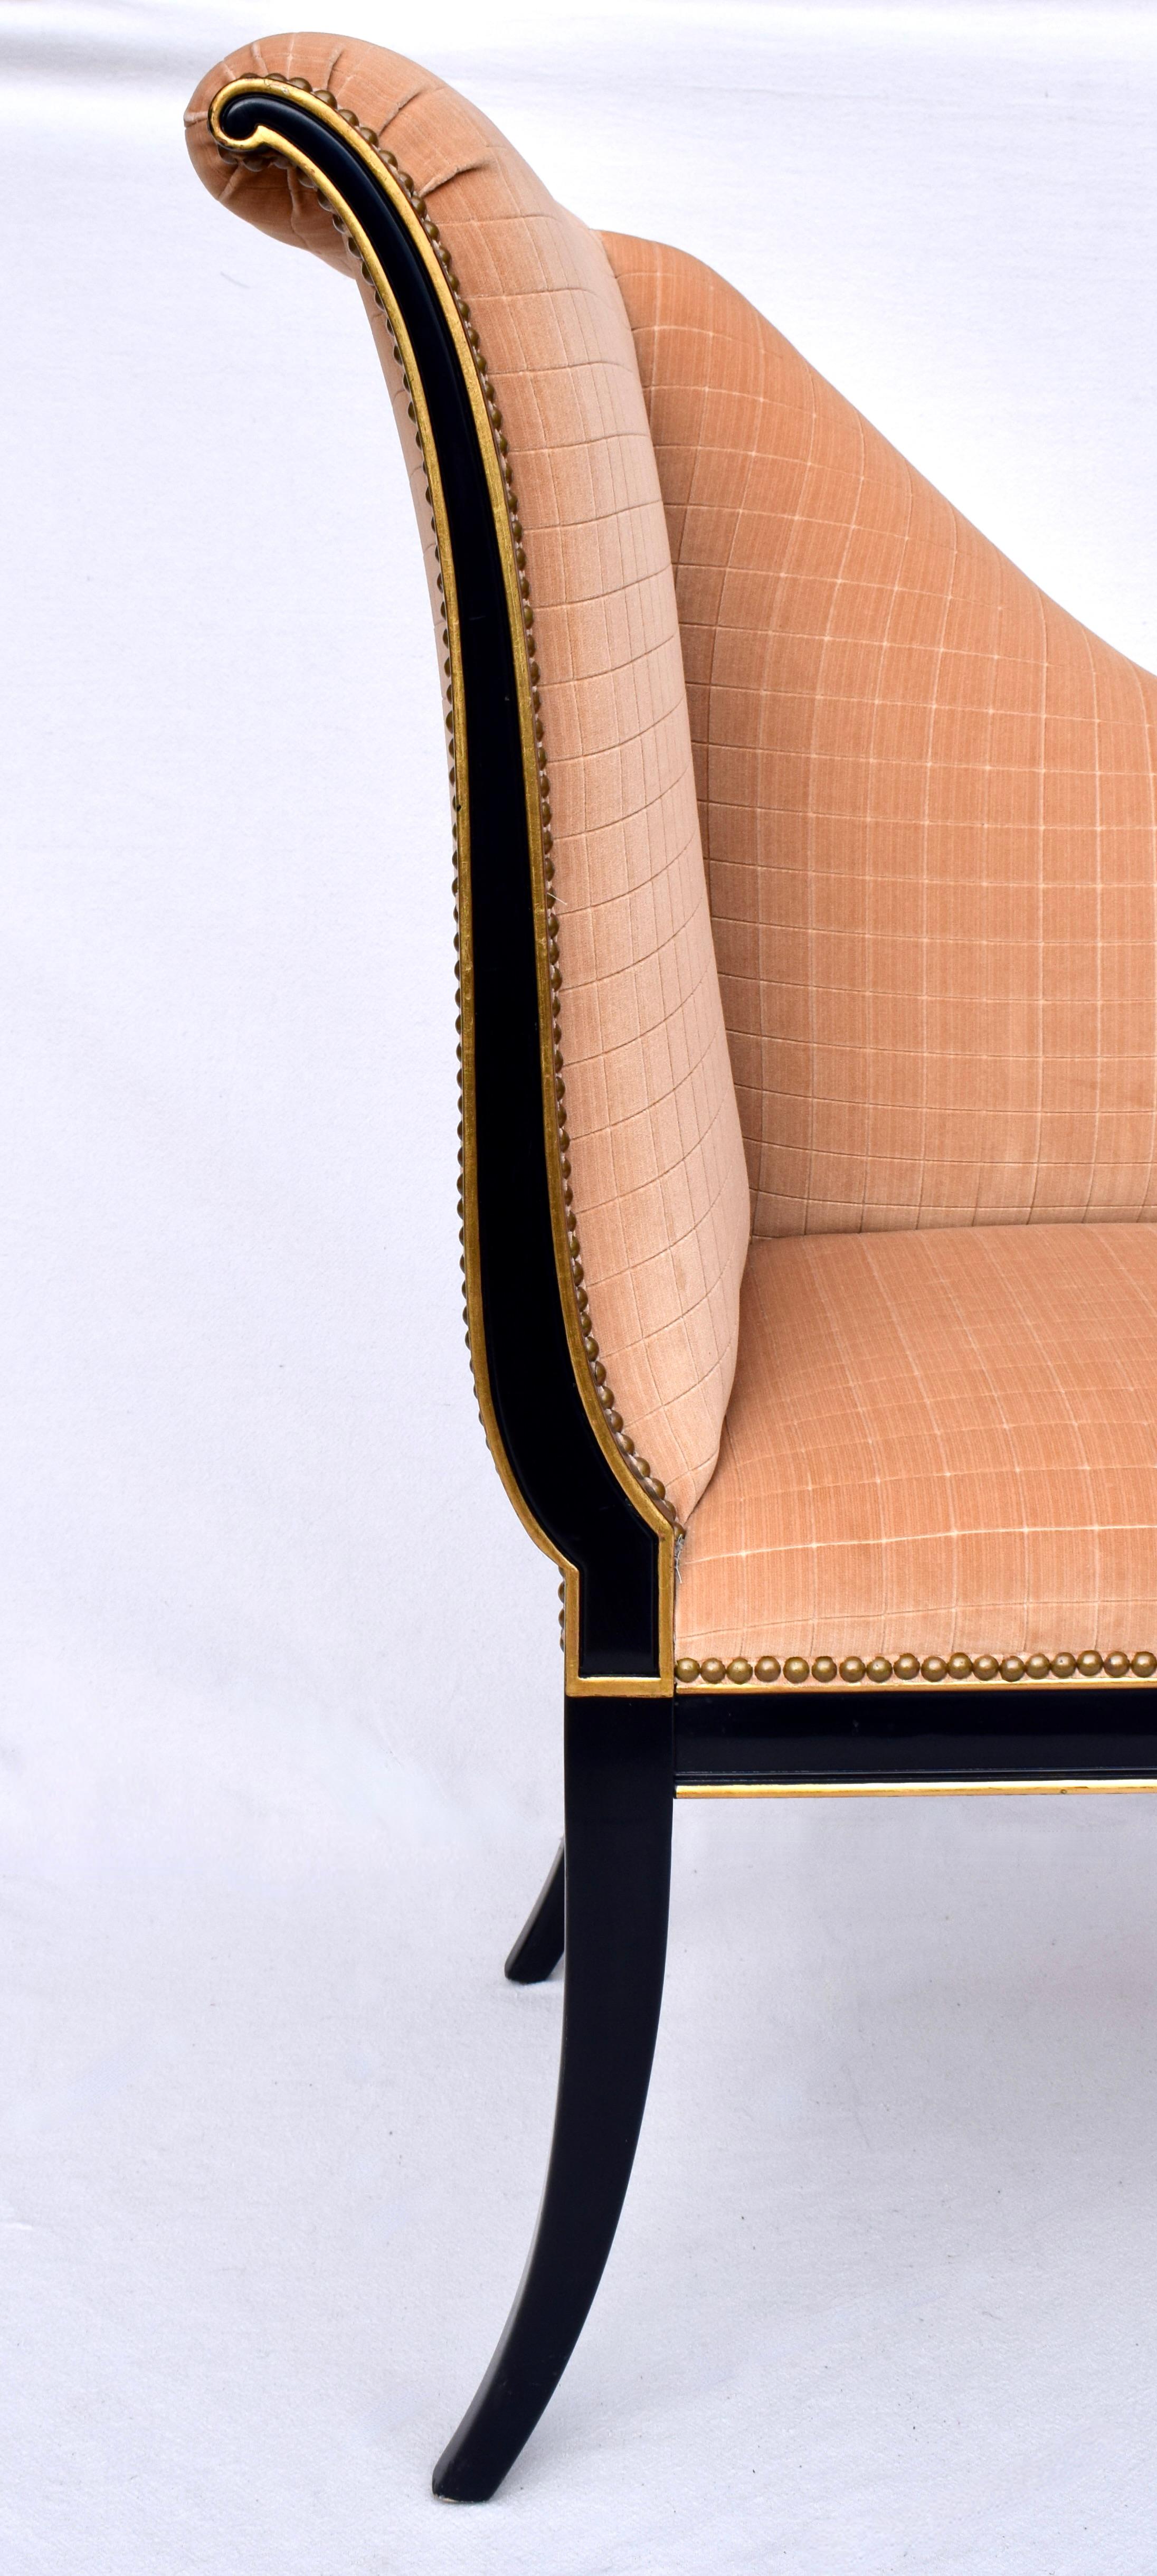 Ein Paar Parler Deux Karges Furniture English Regency Stühle in schwarzem Lack und Gold vergoldet, gepolstert in Samt.  Wörtlich übersetzt heißt es 